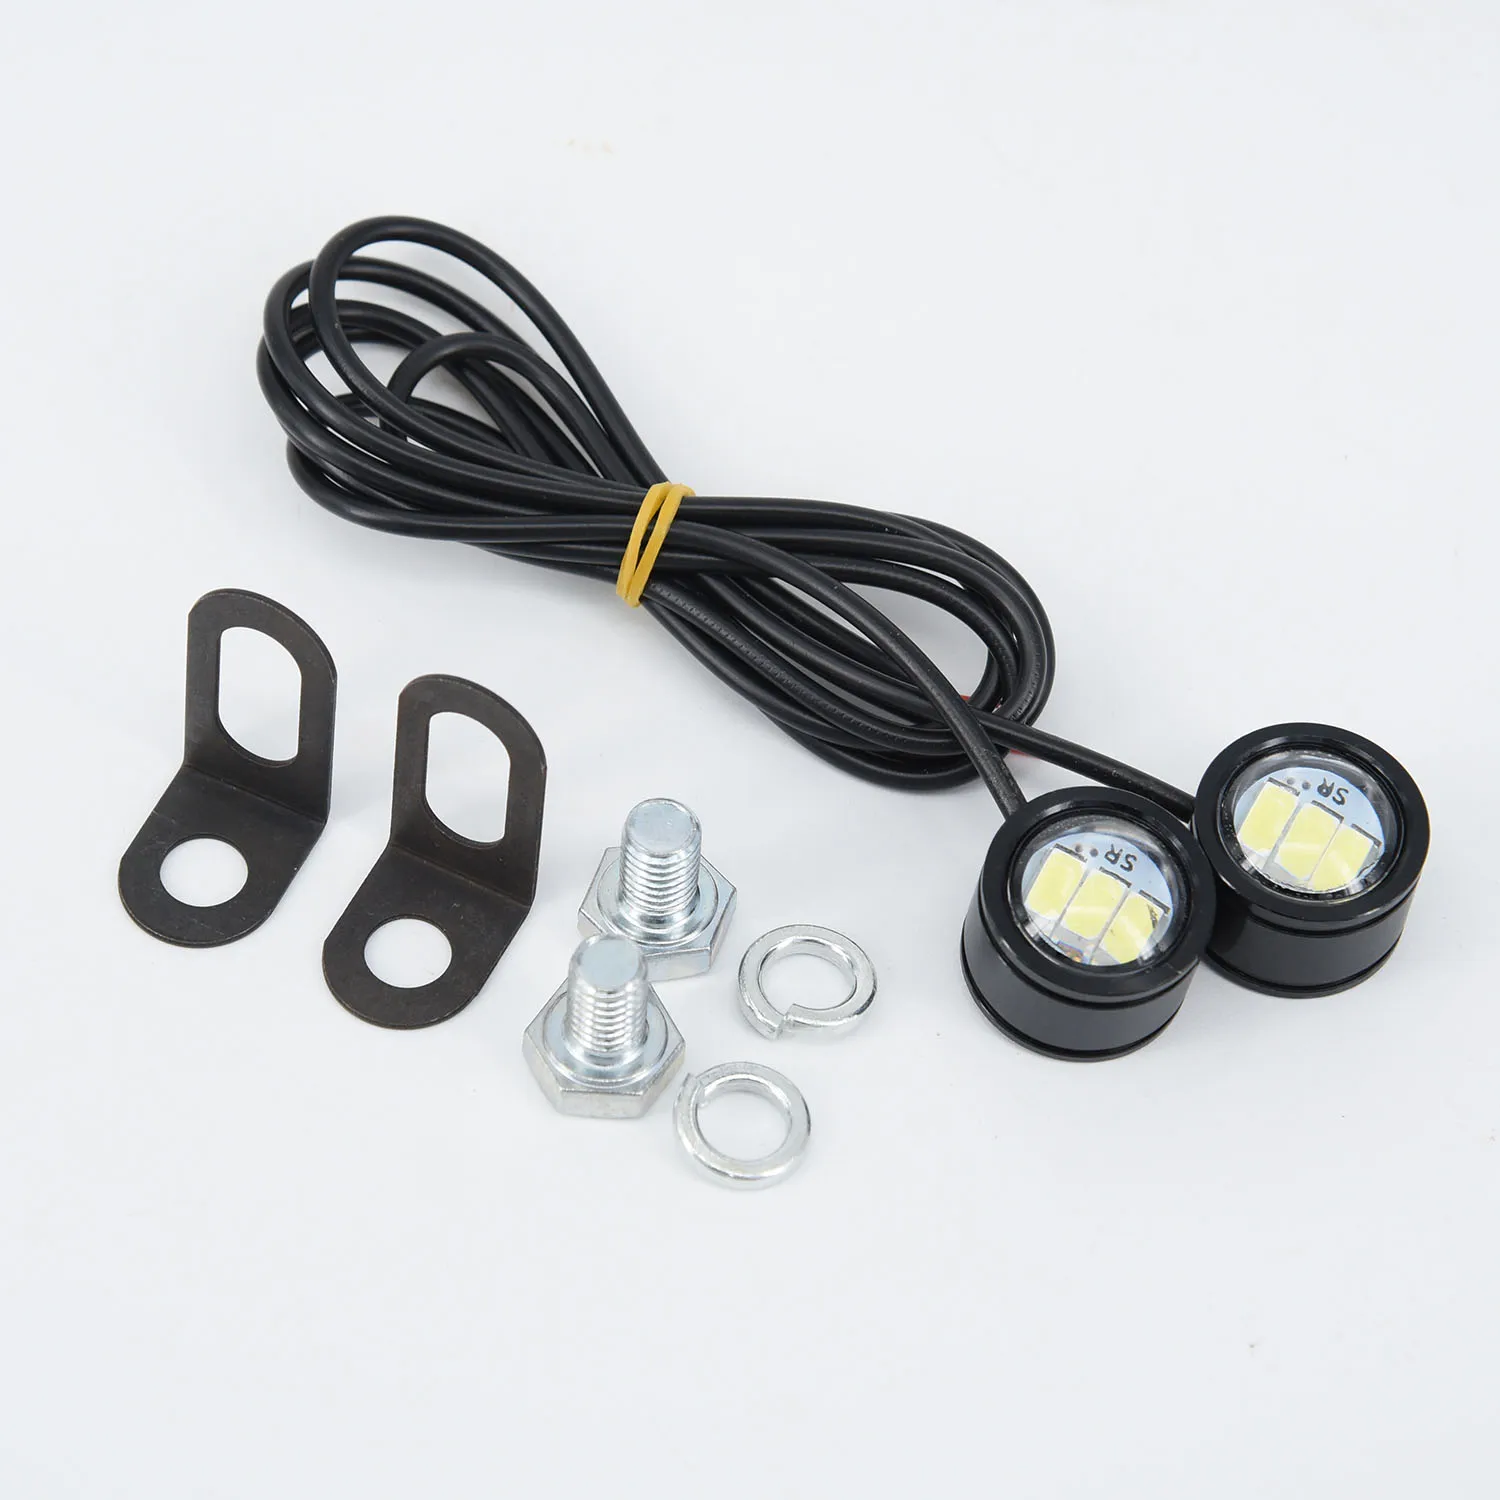 2* хороший светильник для вождения противотуманная фара 2 шт. светодиодный фара для руля велосипеда головной светильник Идеальная замена для старого или изношенного